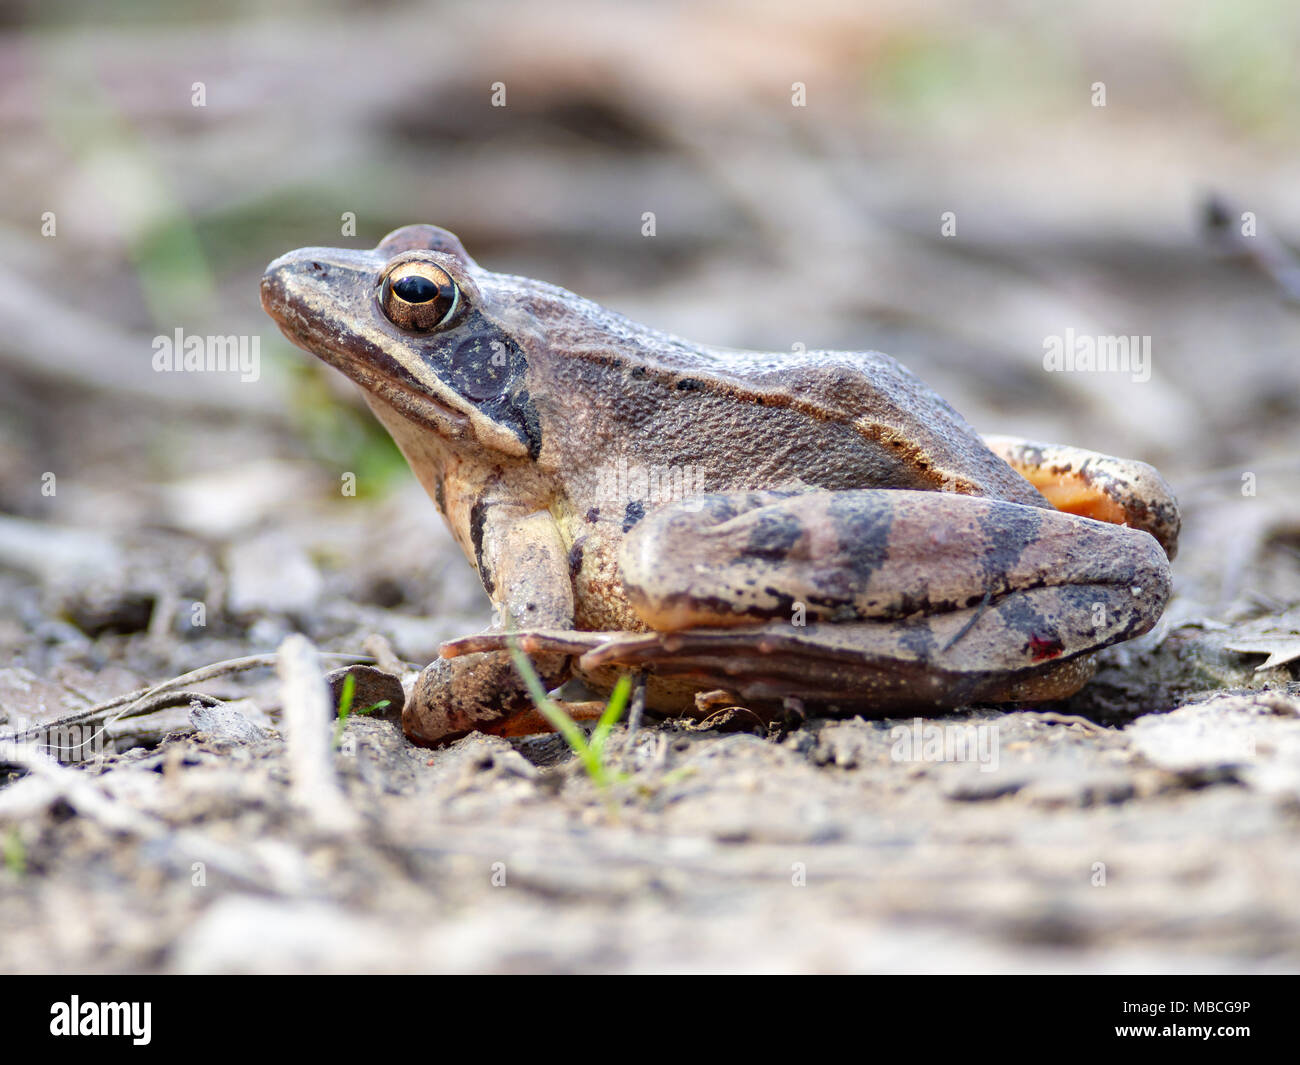 European common frog (Rana temporaria) dans la réserve naturelle nationale sur, Slovaquie Banque D'Images